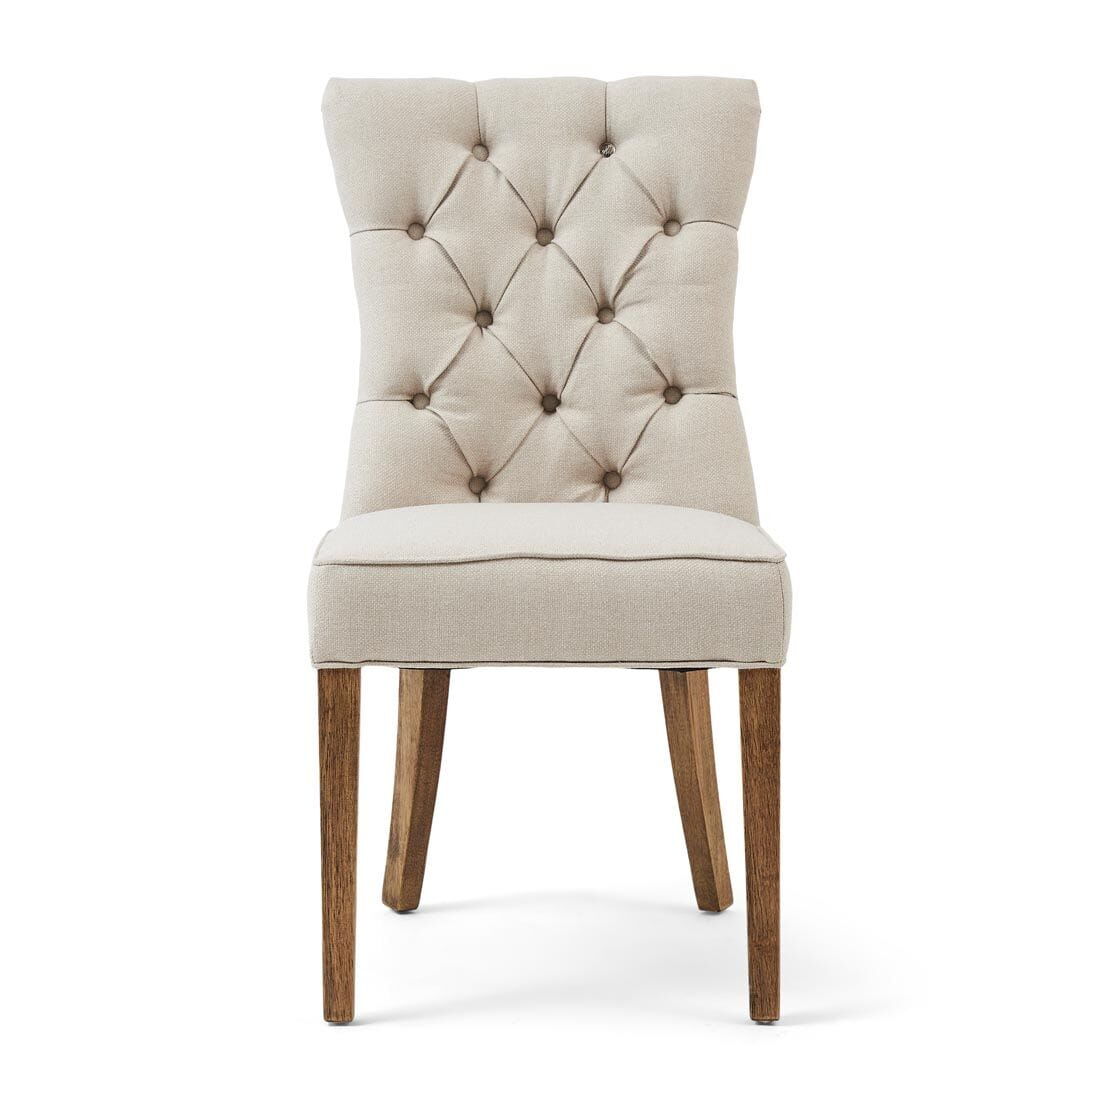 Krzesło do jadalni Balmoral 55x67x99cm oxford weave flanders flax